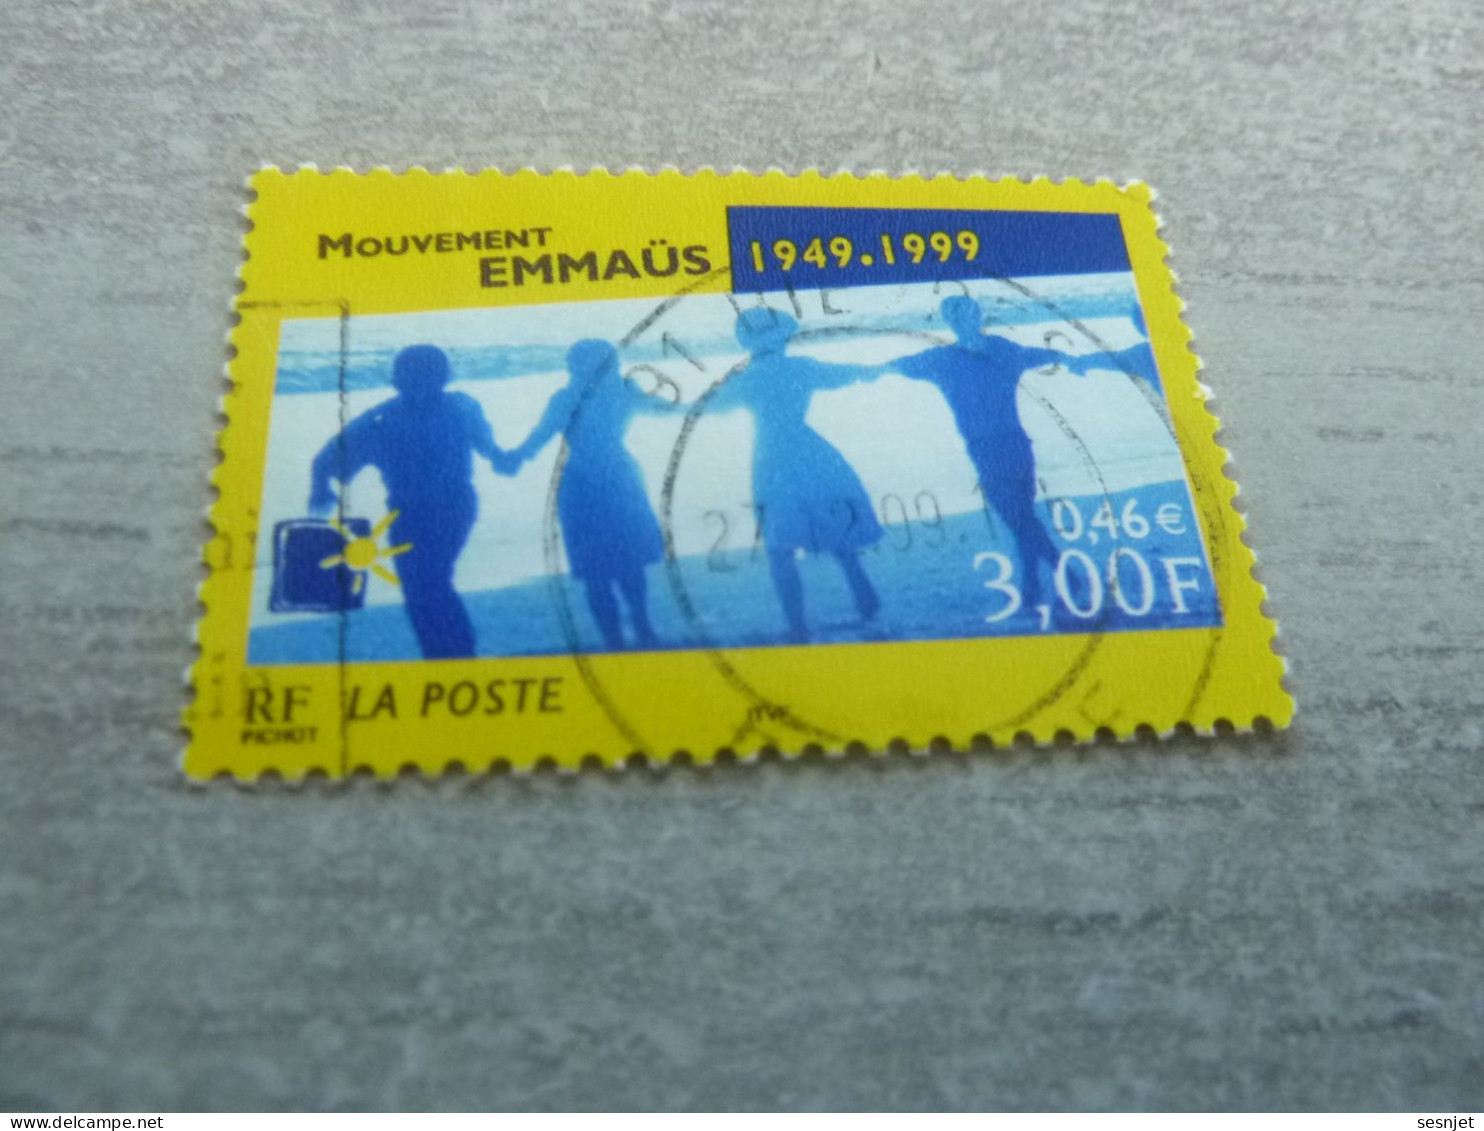 Cinquantenaire Du Mouvement Emmaüs - 3f. (0.46 €) - Yt 3282 - Multicolore - Oblitéré - Année 1999 - - Gebraucht